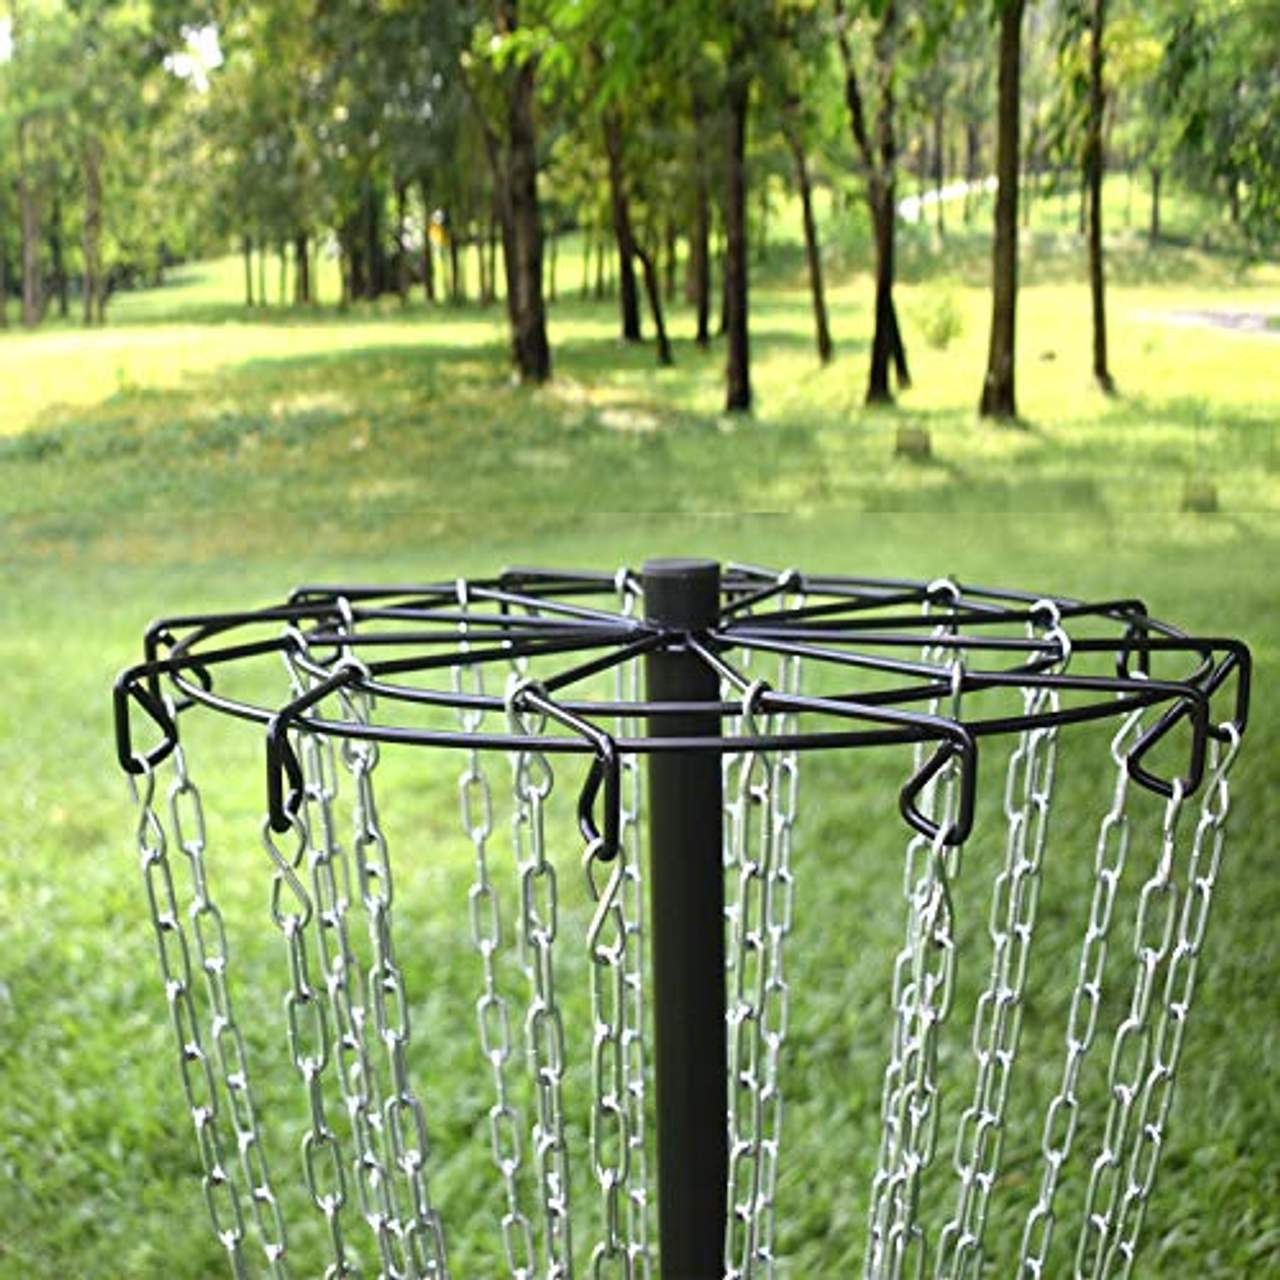 CROWN ME Disc Golf Basket Target beinhaltet 3 Scheiben